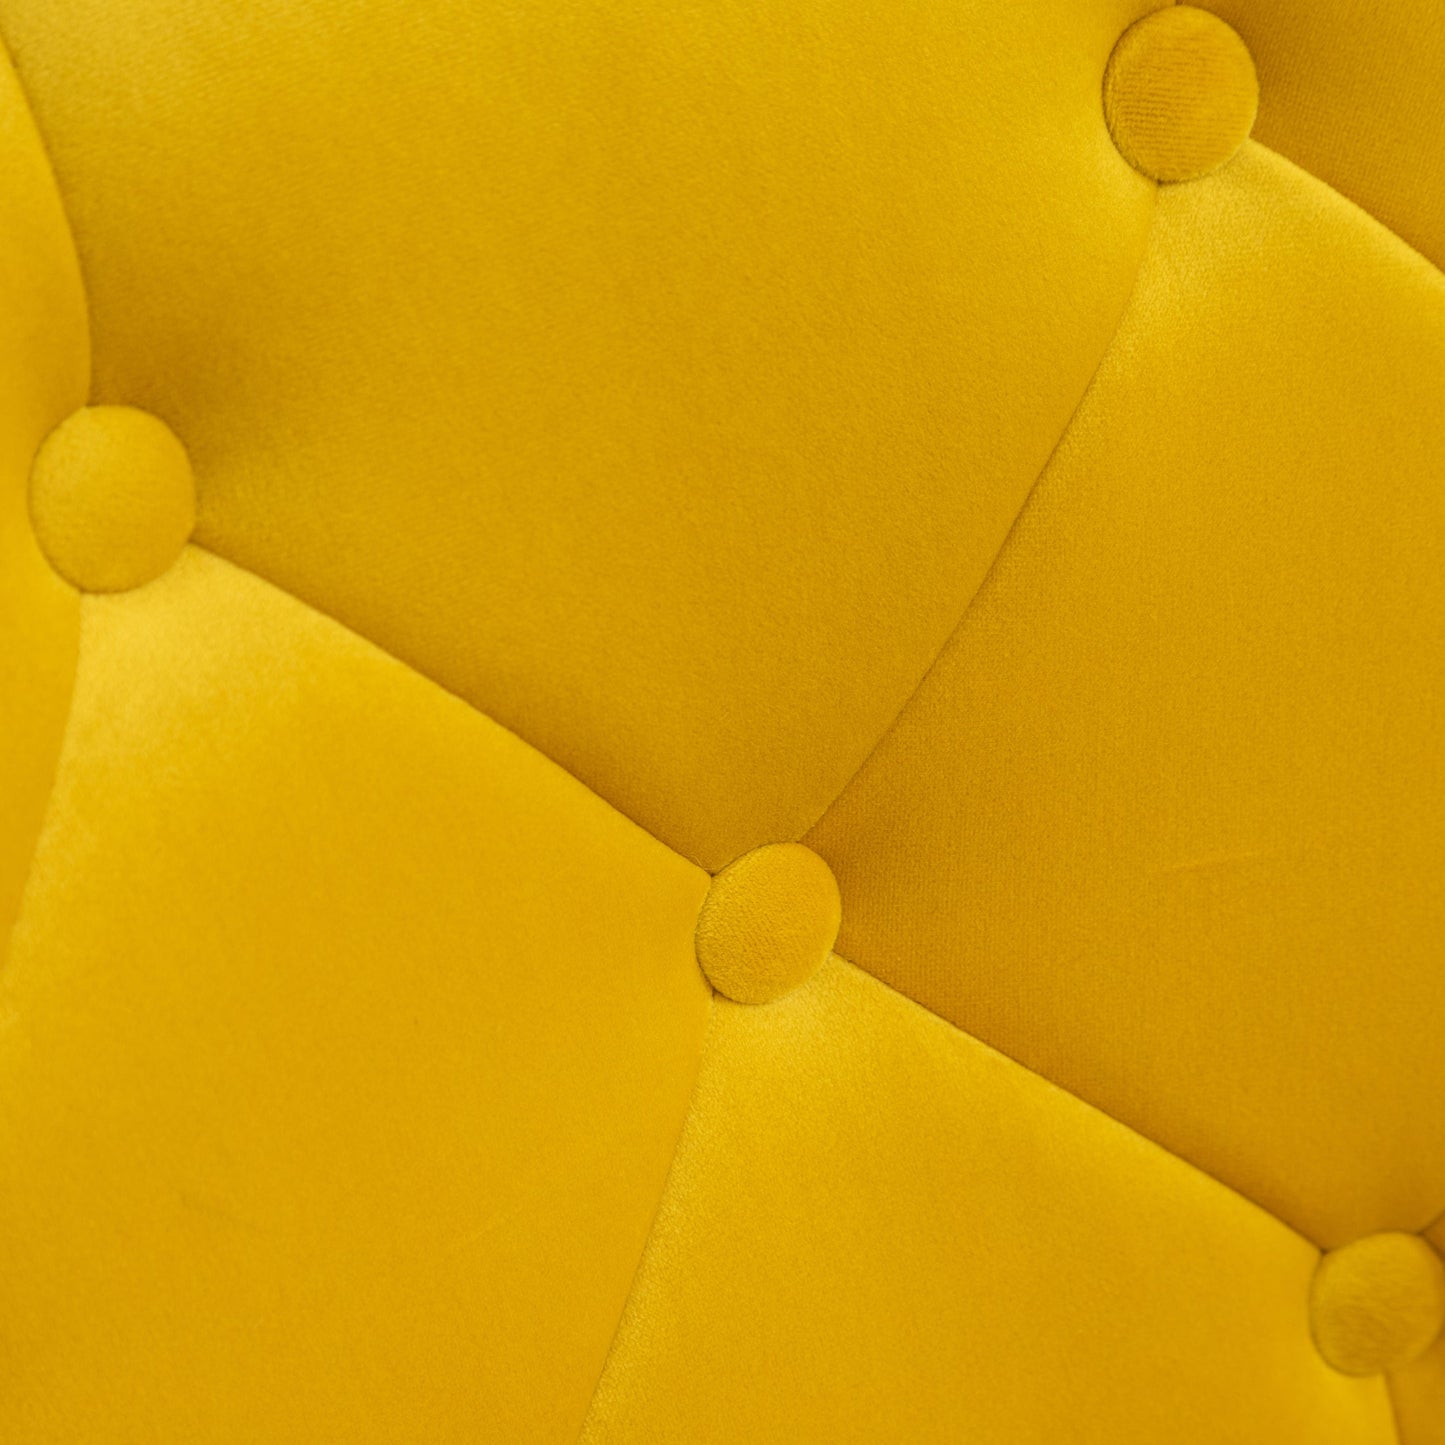 Noas Velvet Upholstered Tufted Back Swivel Accent Chair, Yellow